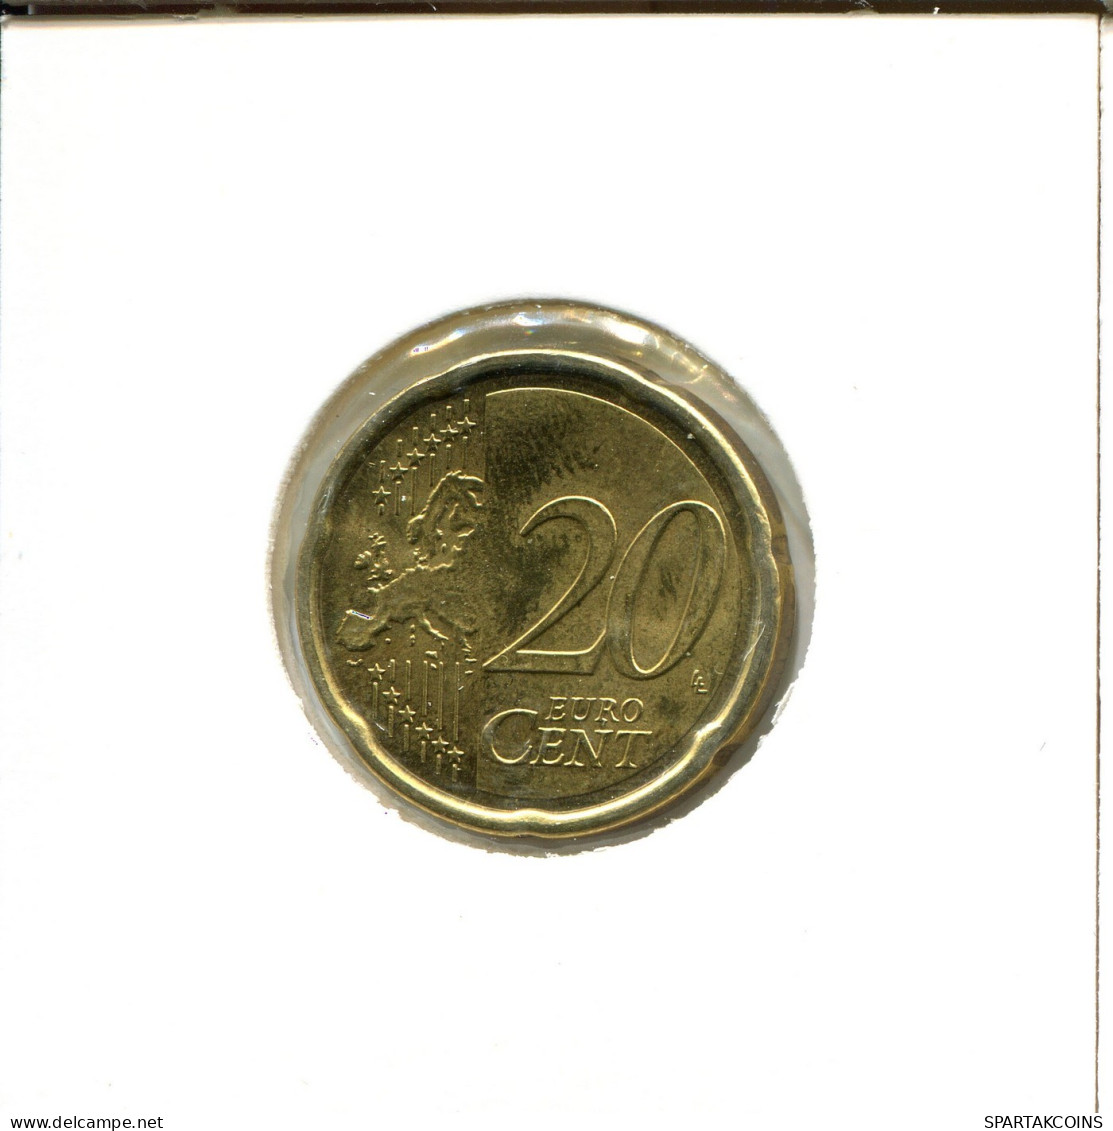 20 EURO CENTS 2010 ITALY Coin #EU244.U.A - Italy